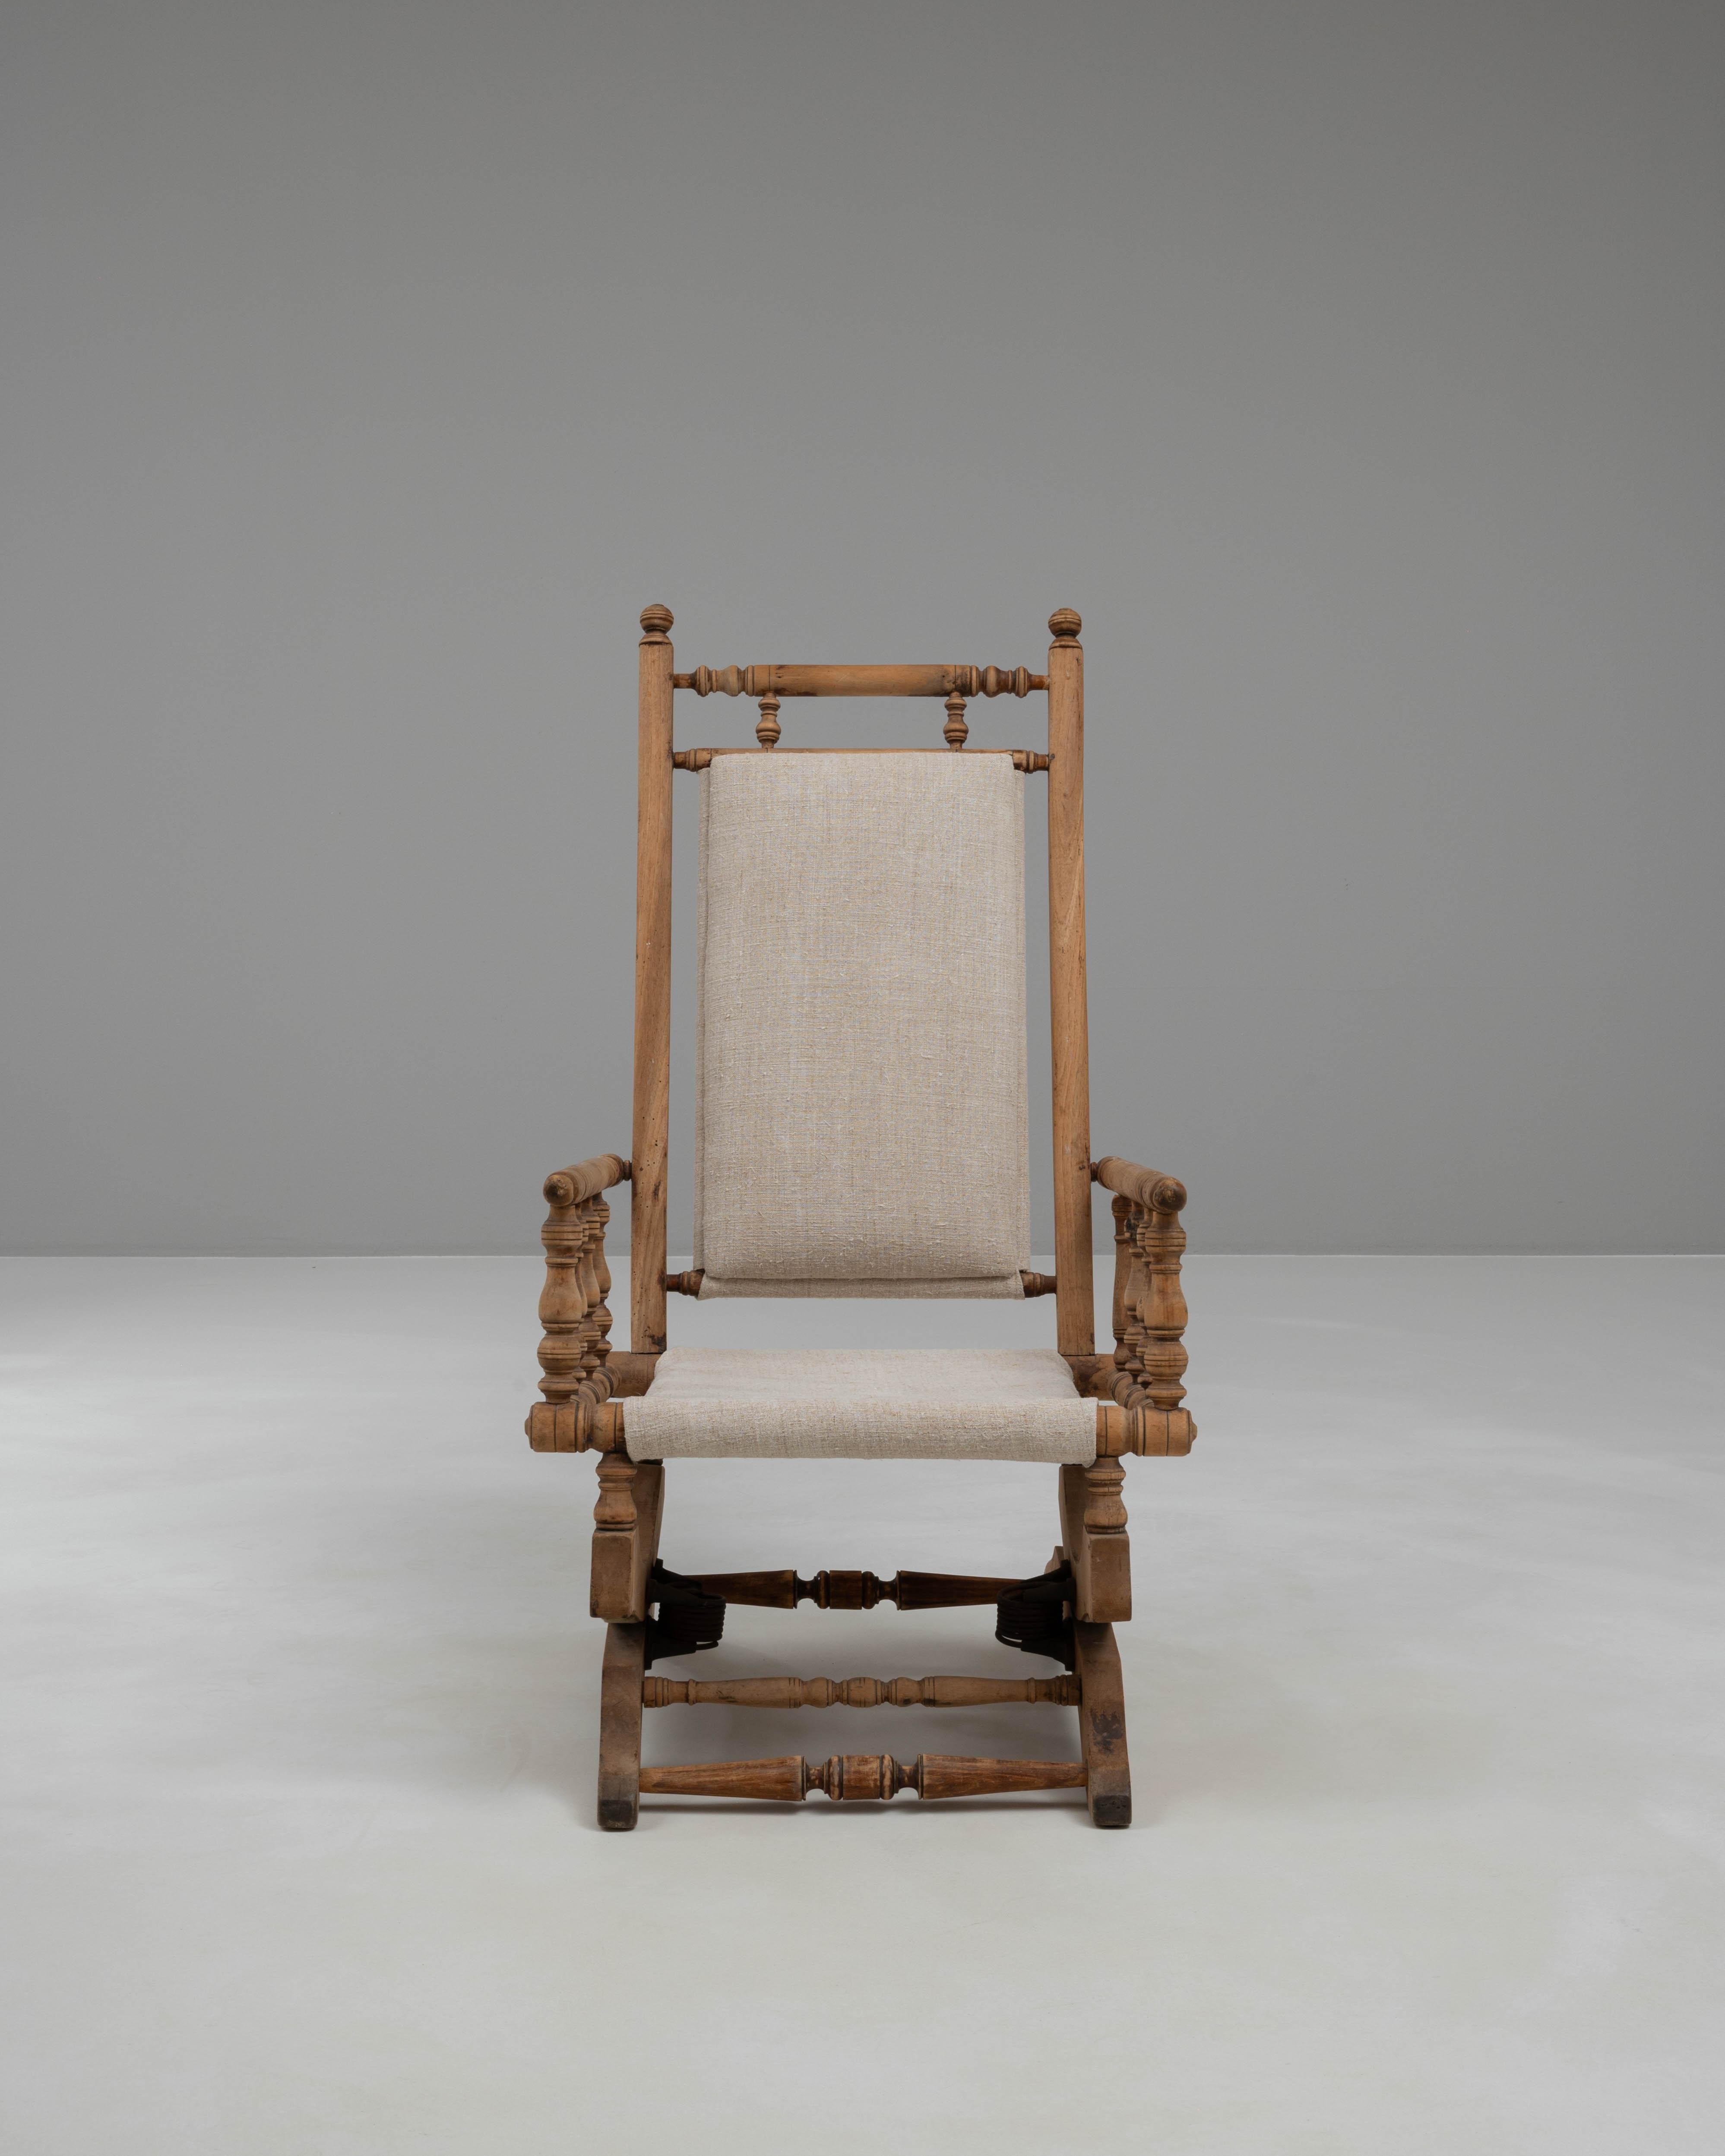 Introduisez une élégance intemporelle et une touche de charme nostalgique dans votre espace de vie avec cet exquis fauteuil à bascule en bois français des années 1900. Fabriquée avec une attention méticuleuse aux détails, cette chaise est dotée d'un